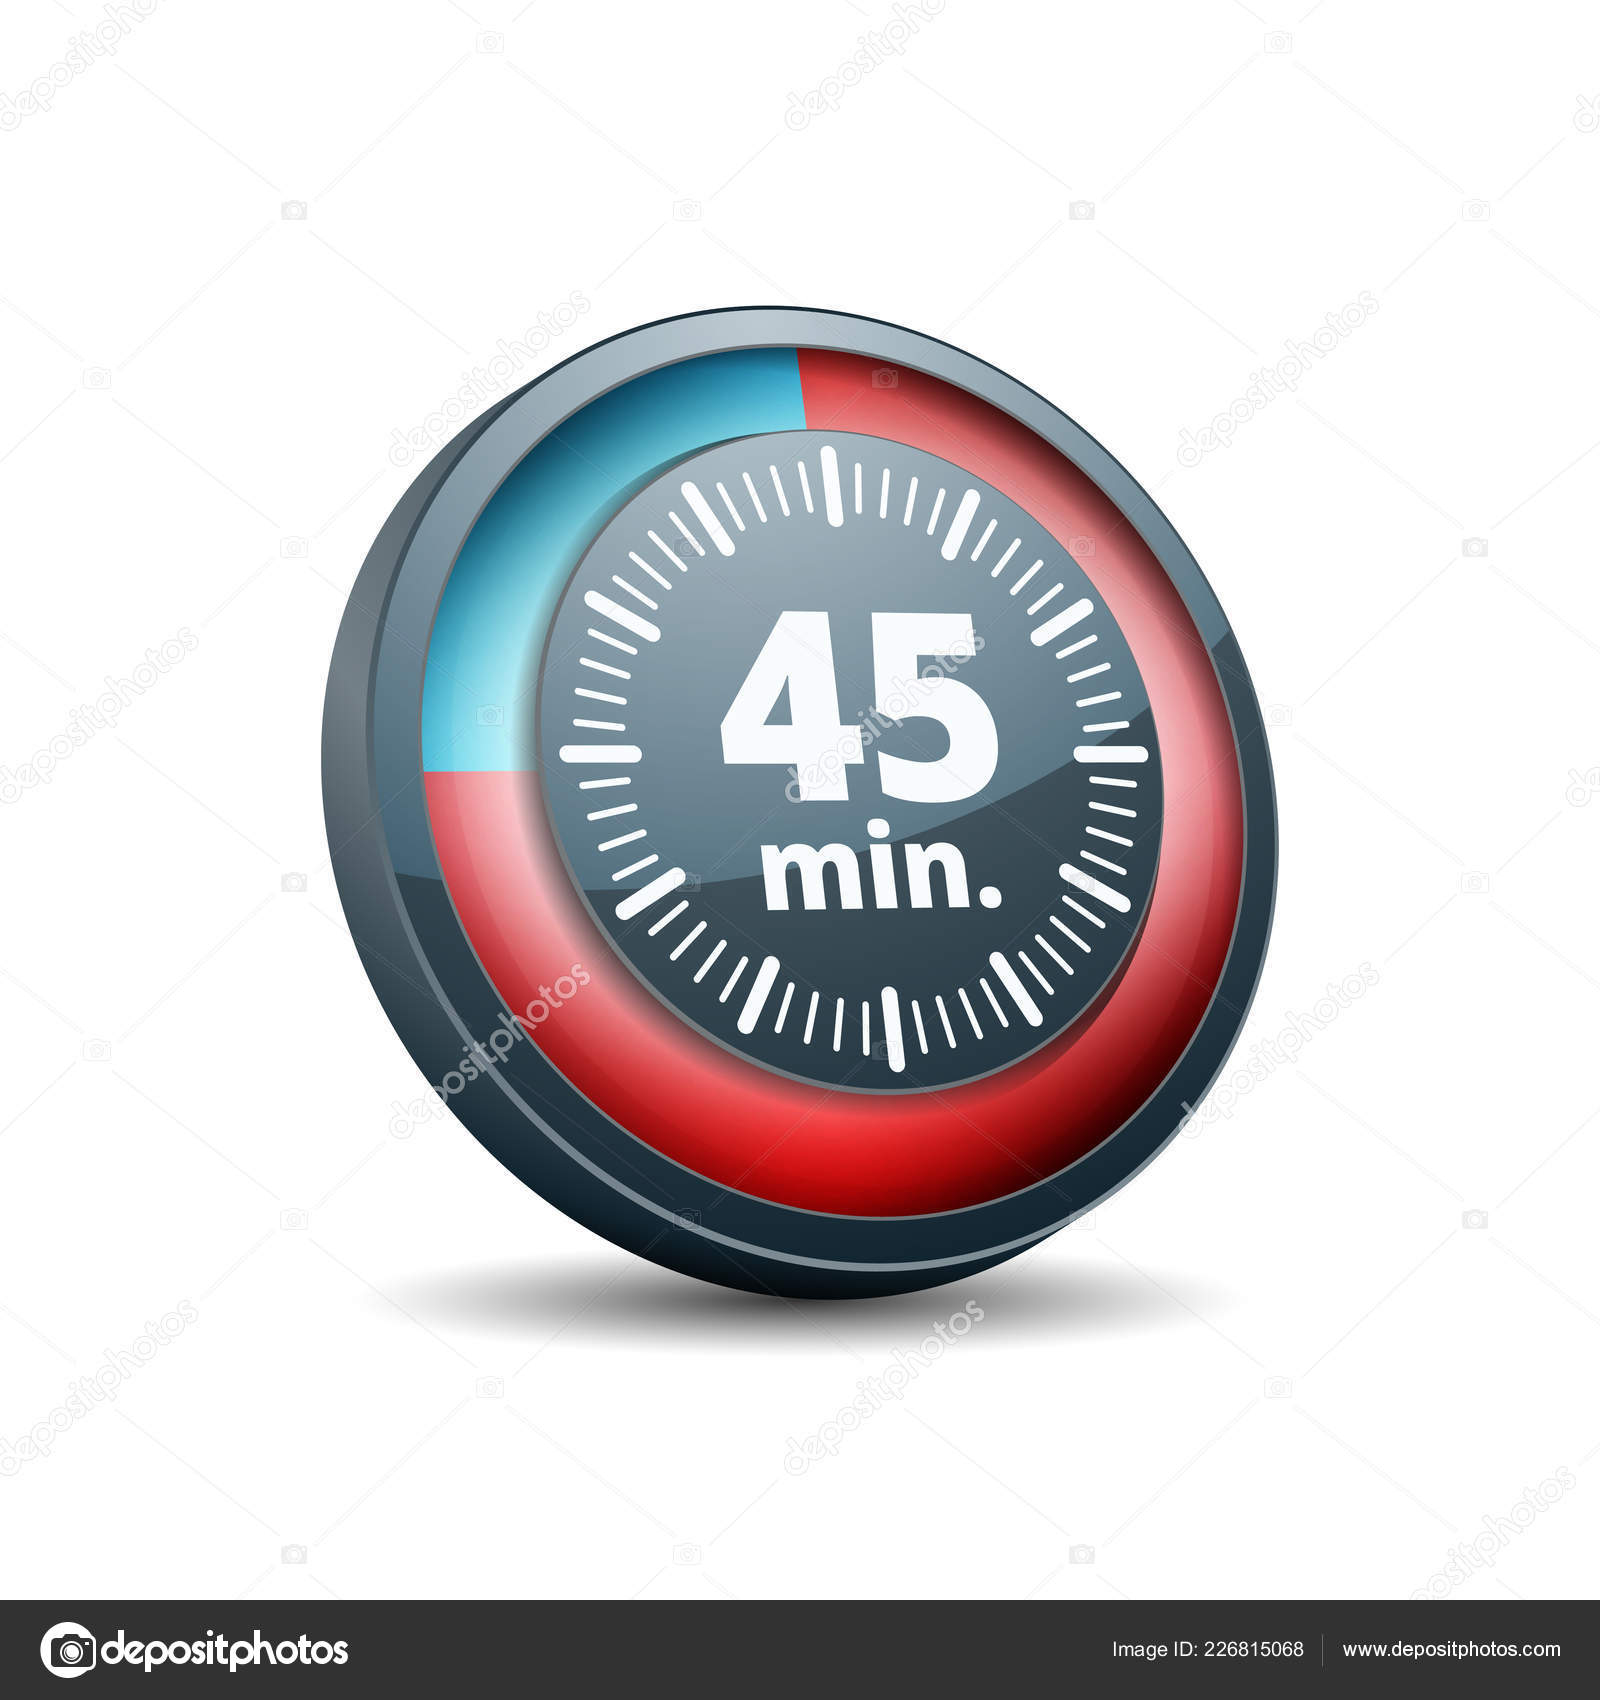 Biểu tượng đồng hồ đếm ngược 5 phút giúp bạn quản lý thời gian thông minh và hiệu quả. Hãy xem hình ảnh liên quan đến biểu tượng này để tìm hiểu thêm về những tính năng đặc biệt của nó và cách sử dụng đồng hồ đếm ngược này để đạt hiệu quả tối đa trong công việc của mình.